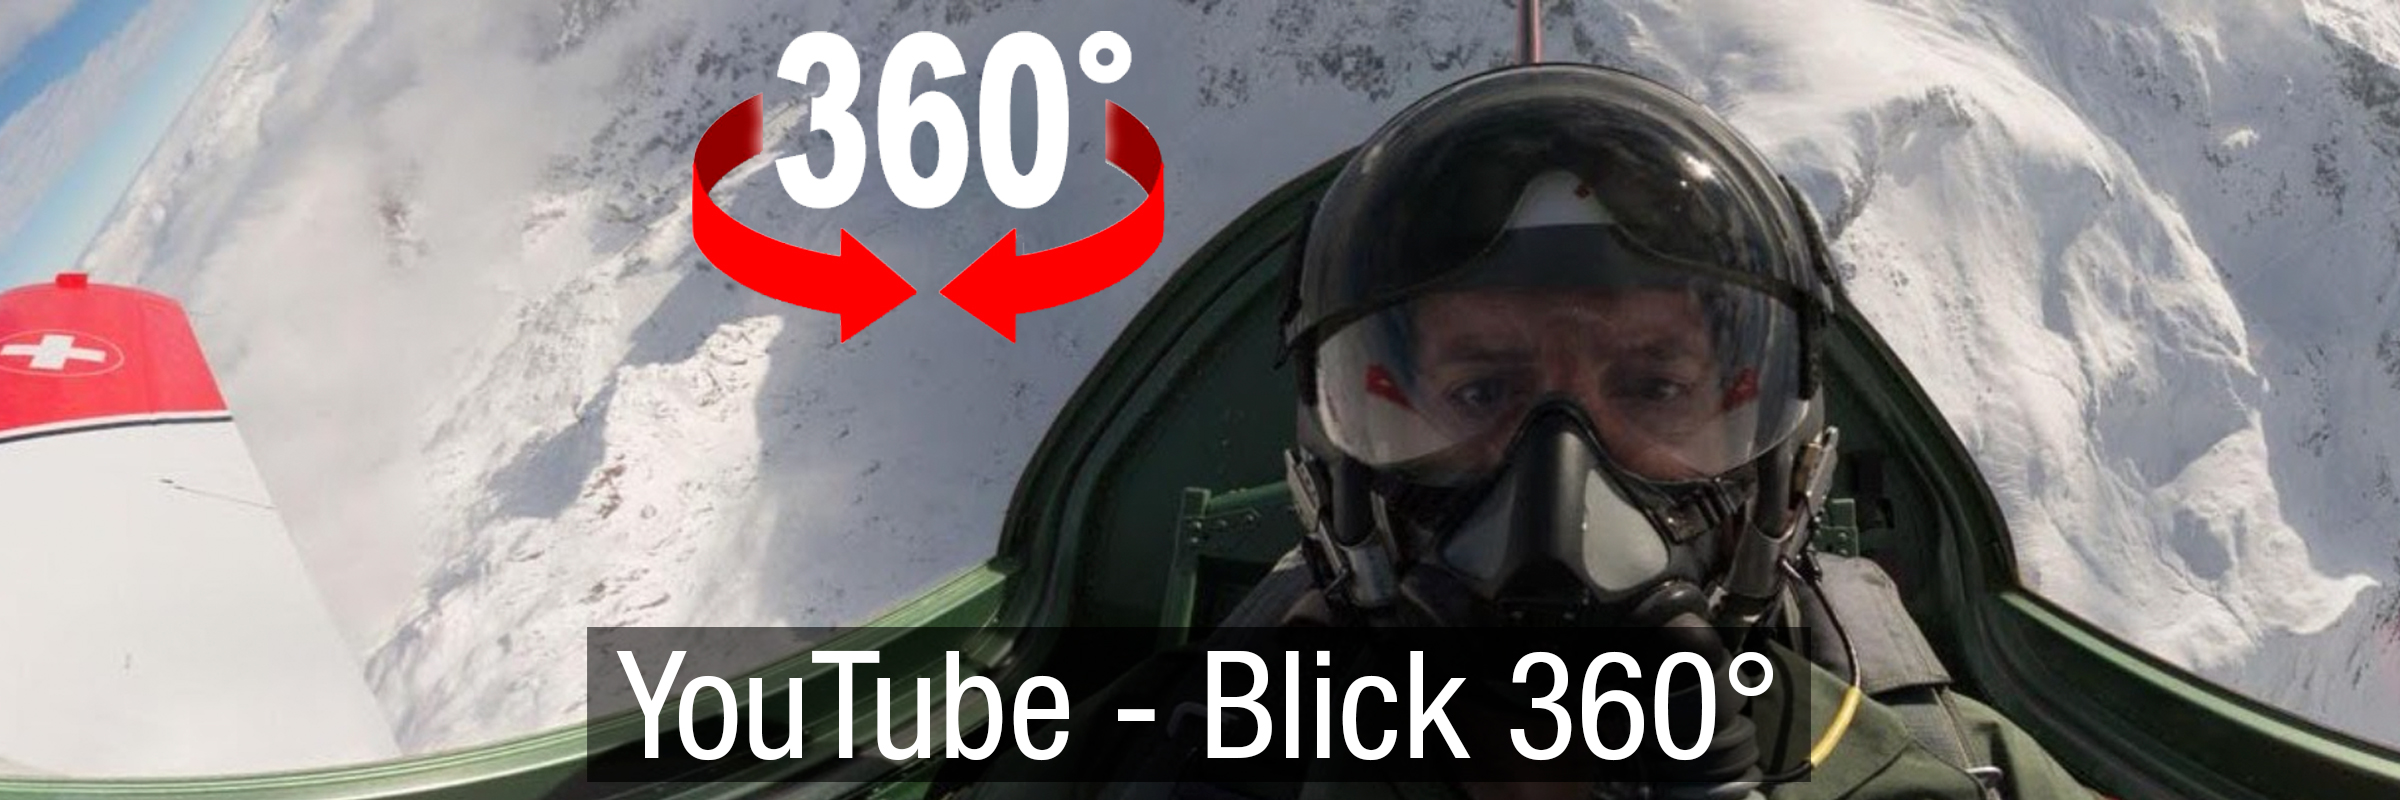 Youtube Blick VR 360